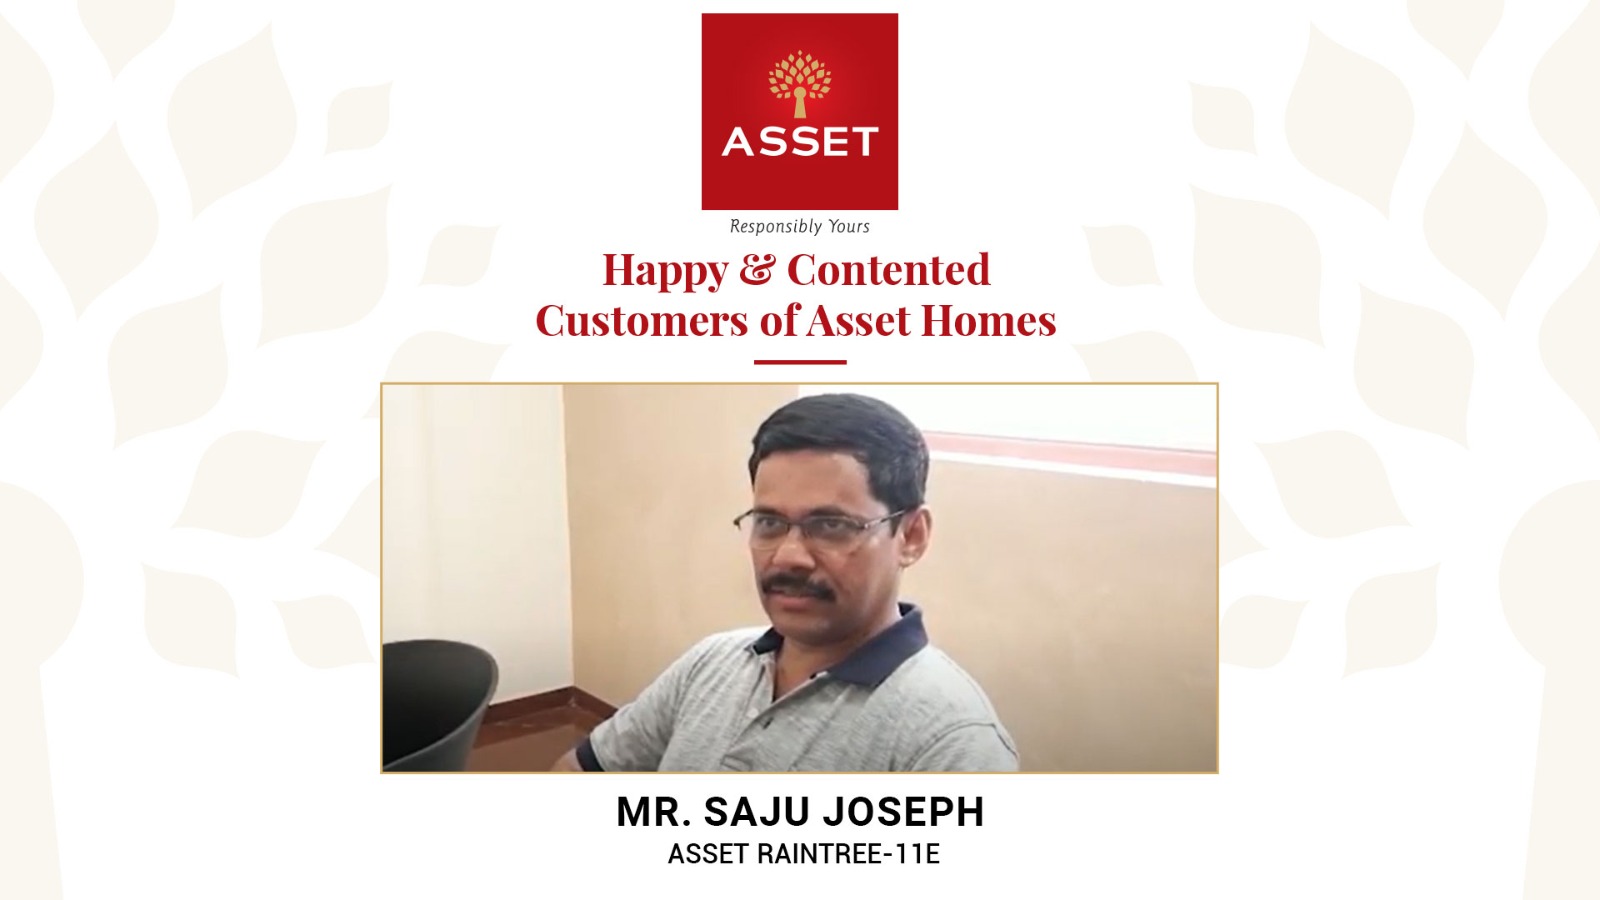 Mr. Saju Joseph, Asset Raintree-11E